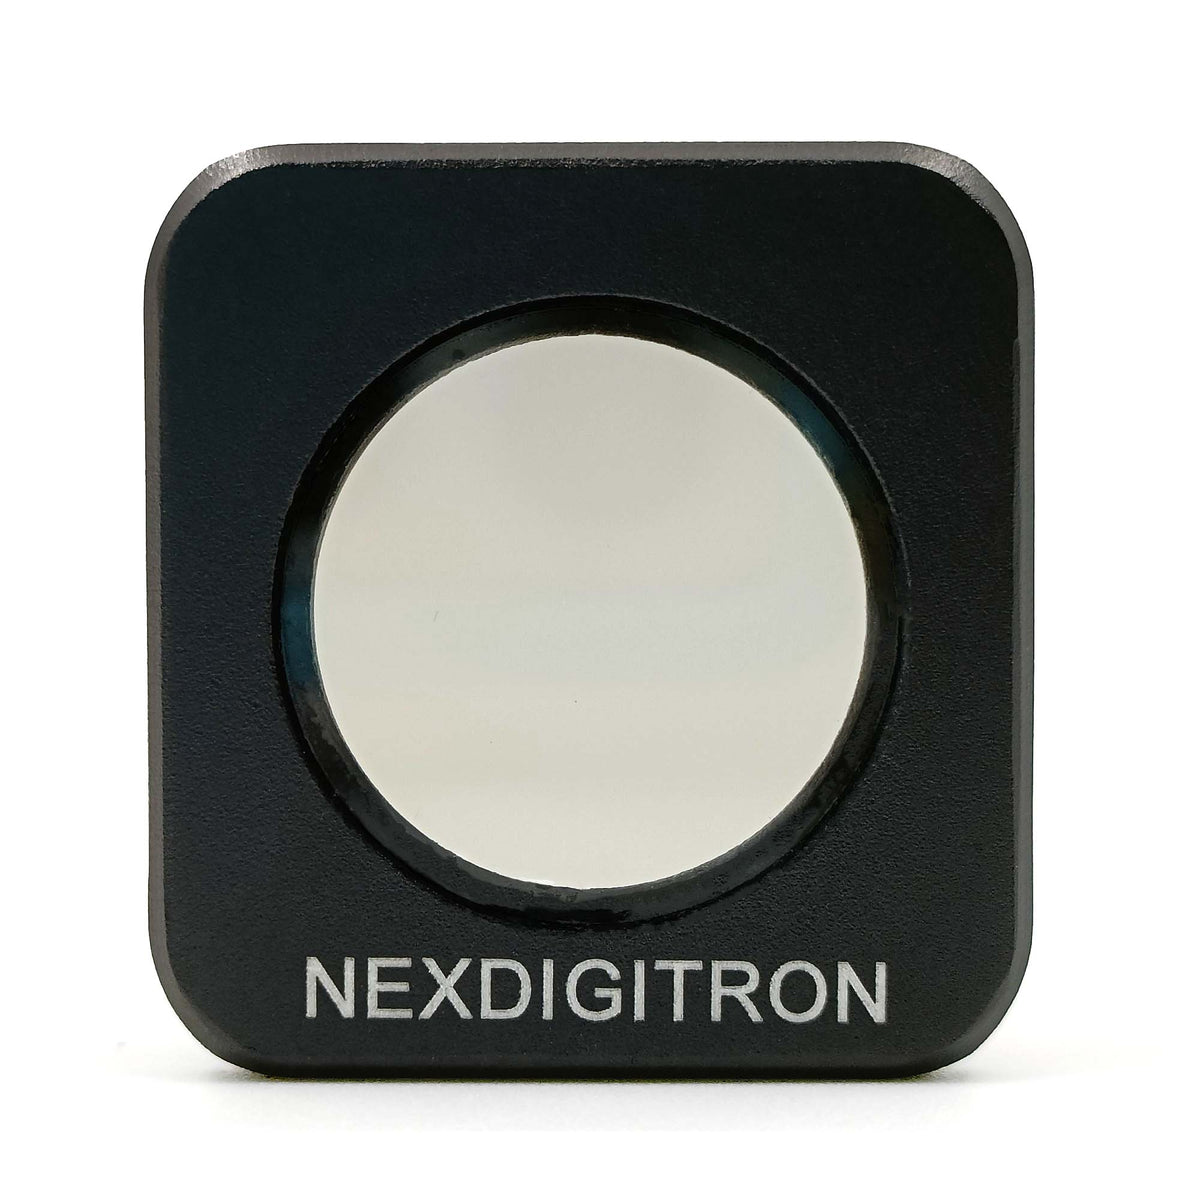 www.nexdigitron.com